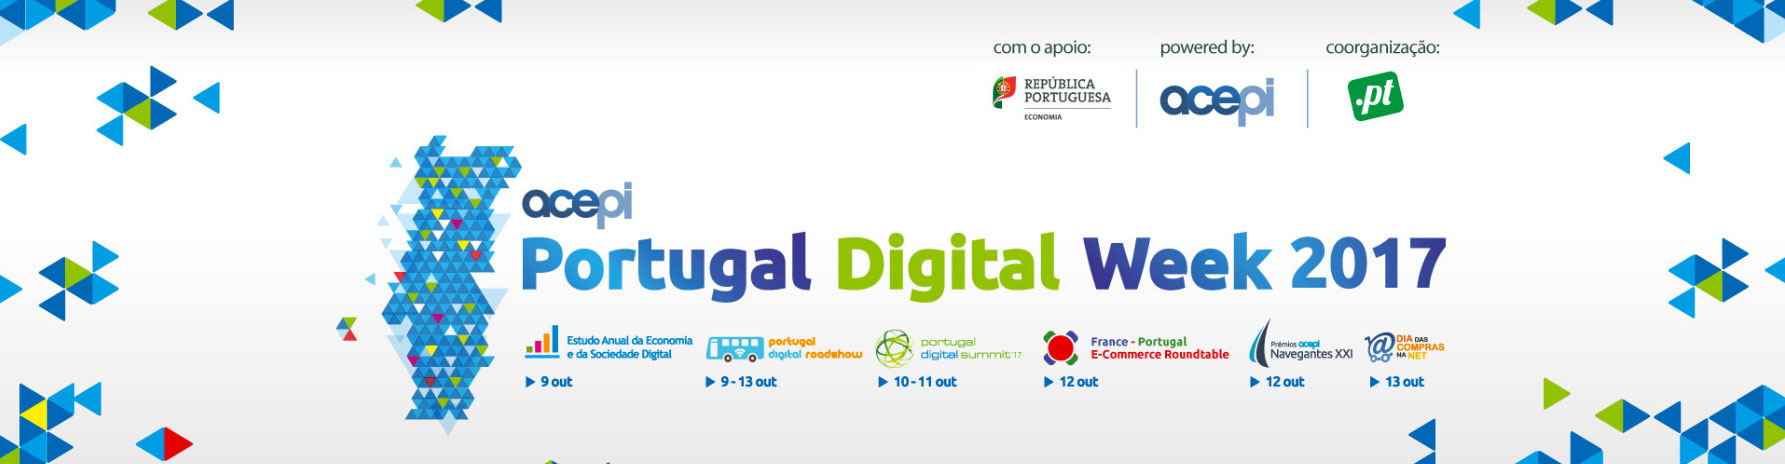 portugal-digital-week